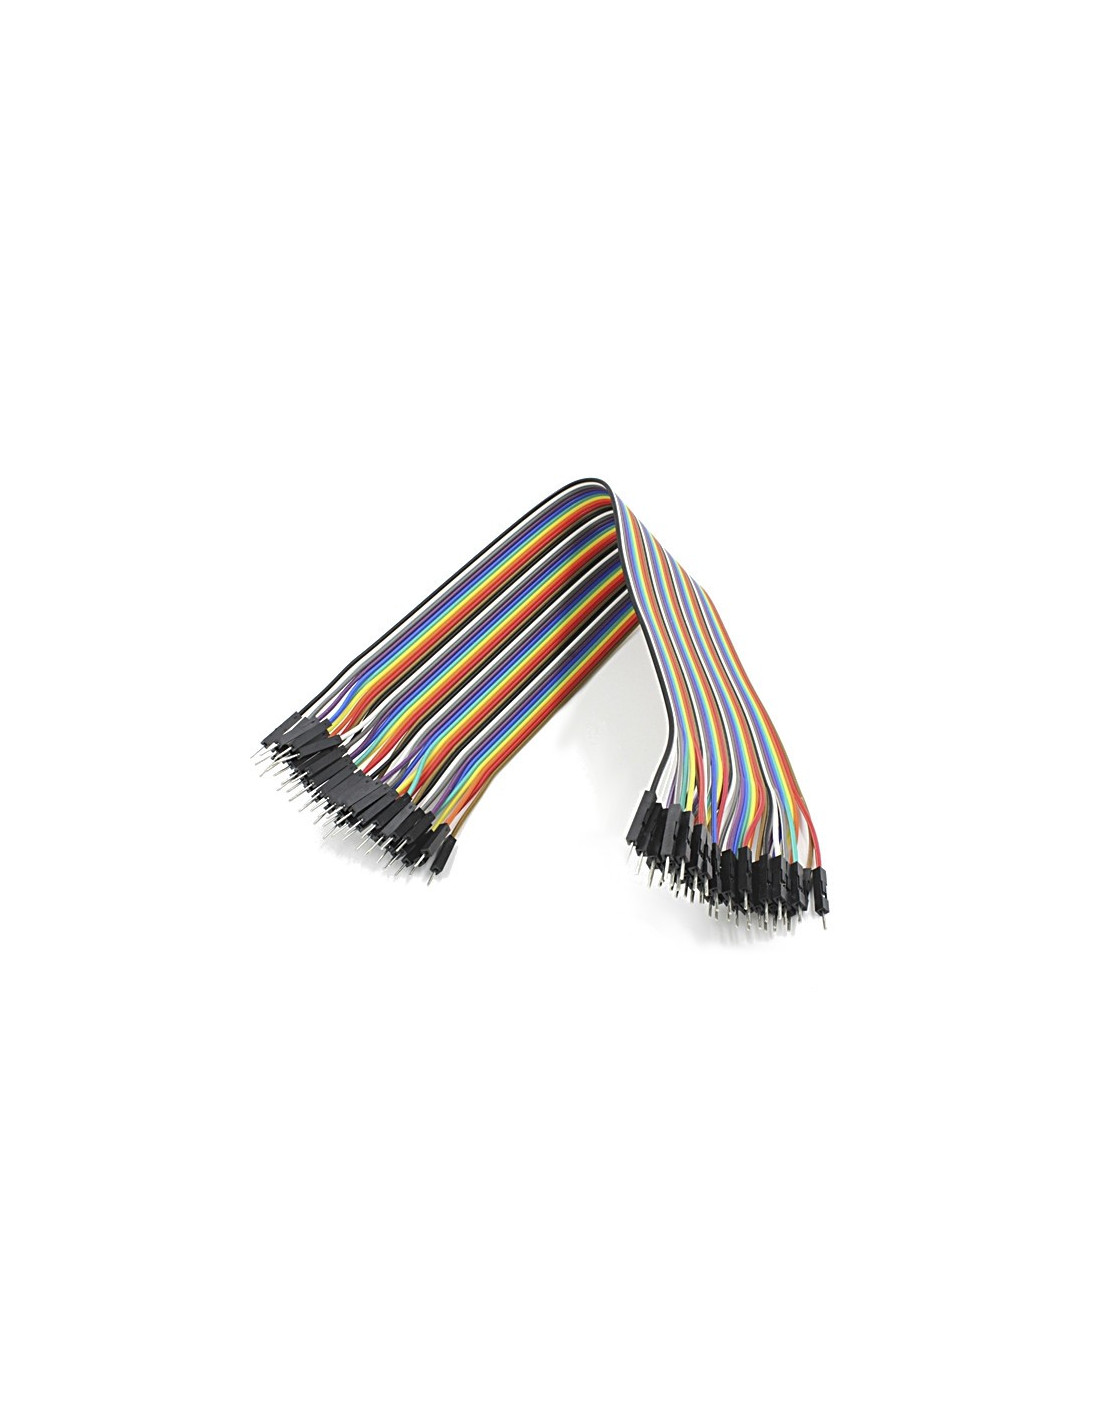 Cables dupont 10cm, M-M (40uds)